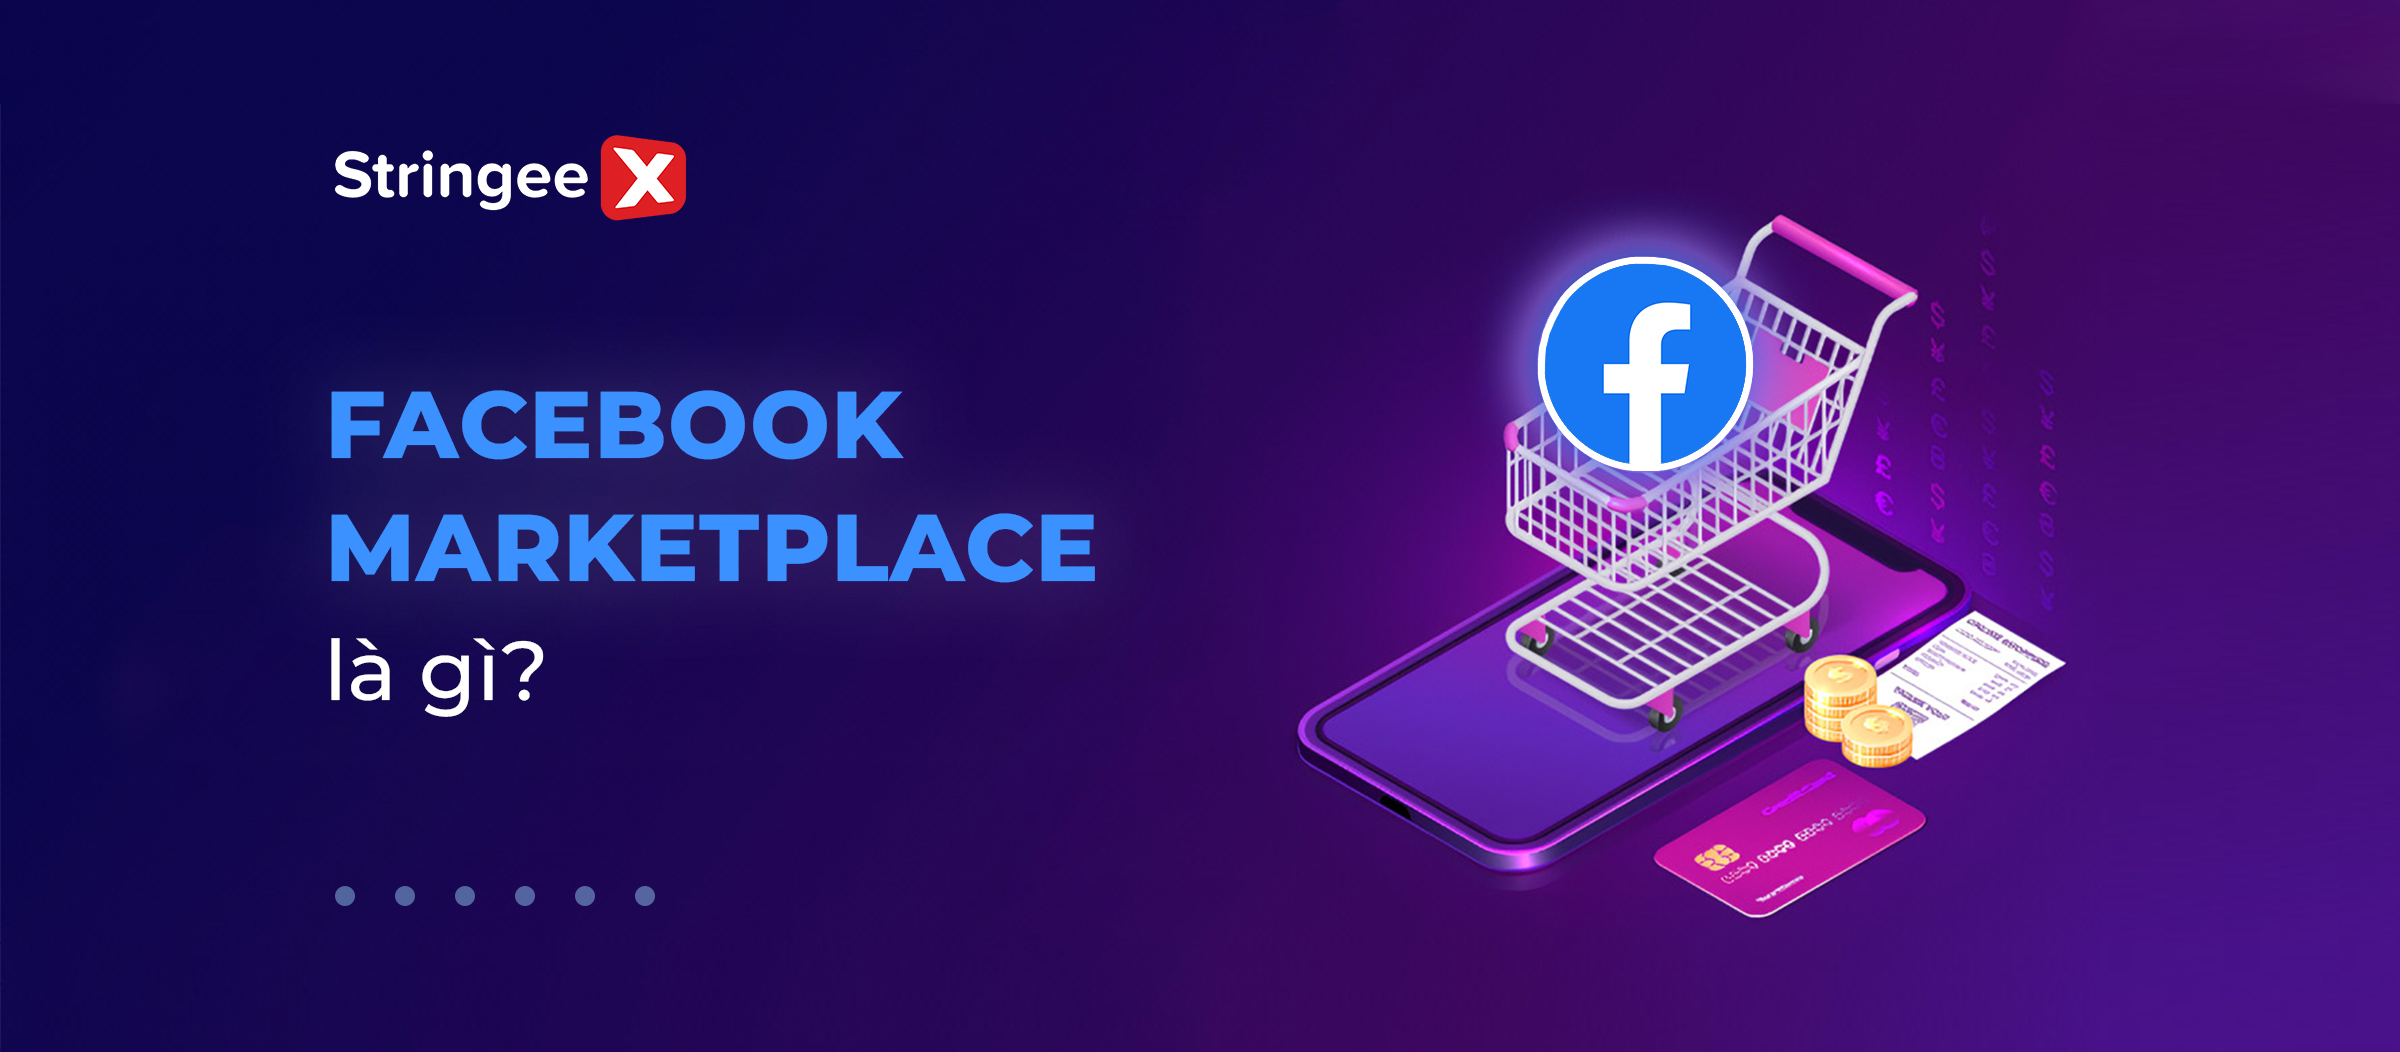 Facebook Marketplace là gì? Cách triển khai Marketplace trên facebook hiệu quả